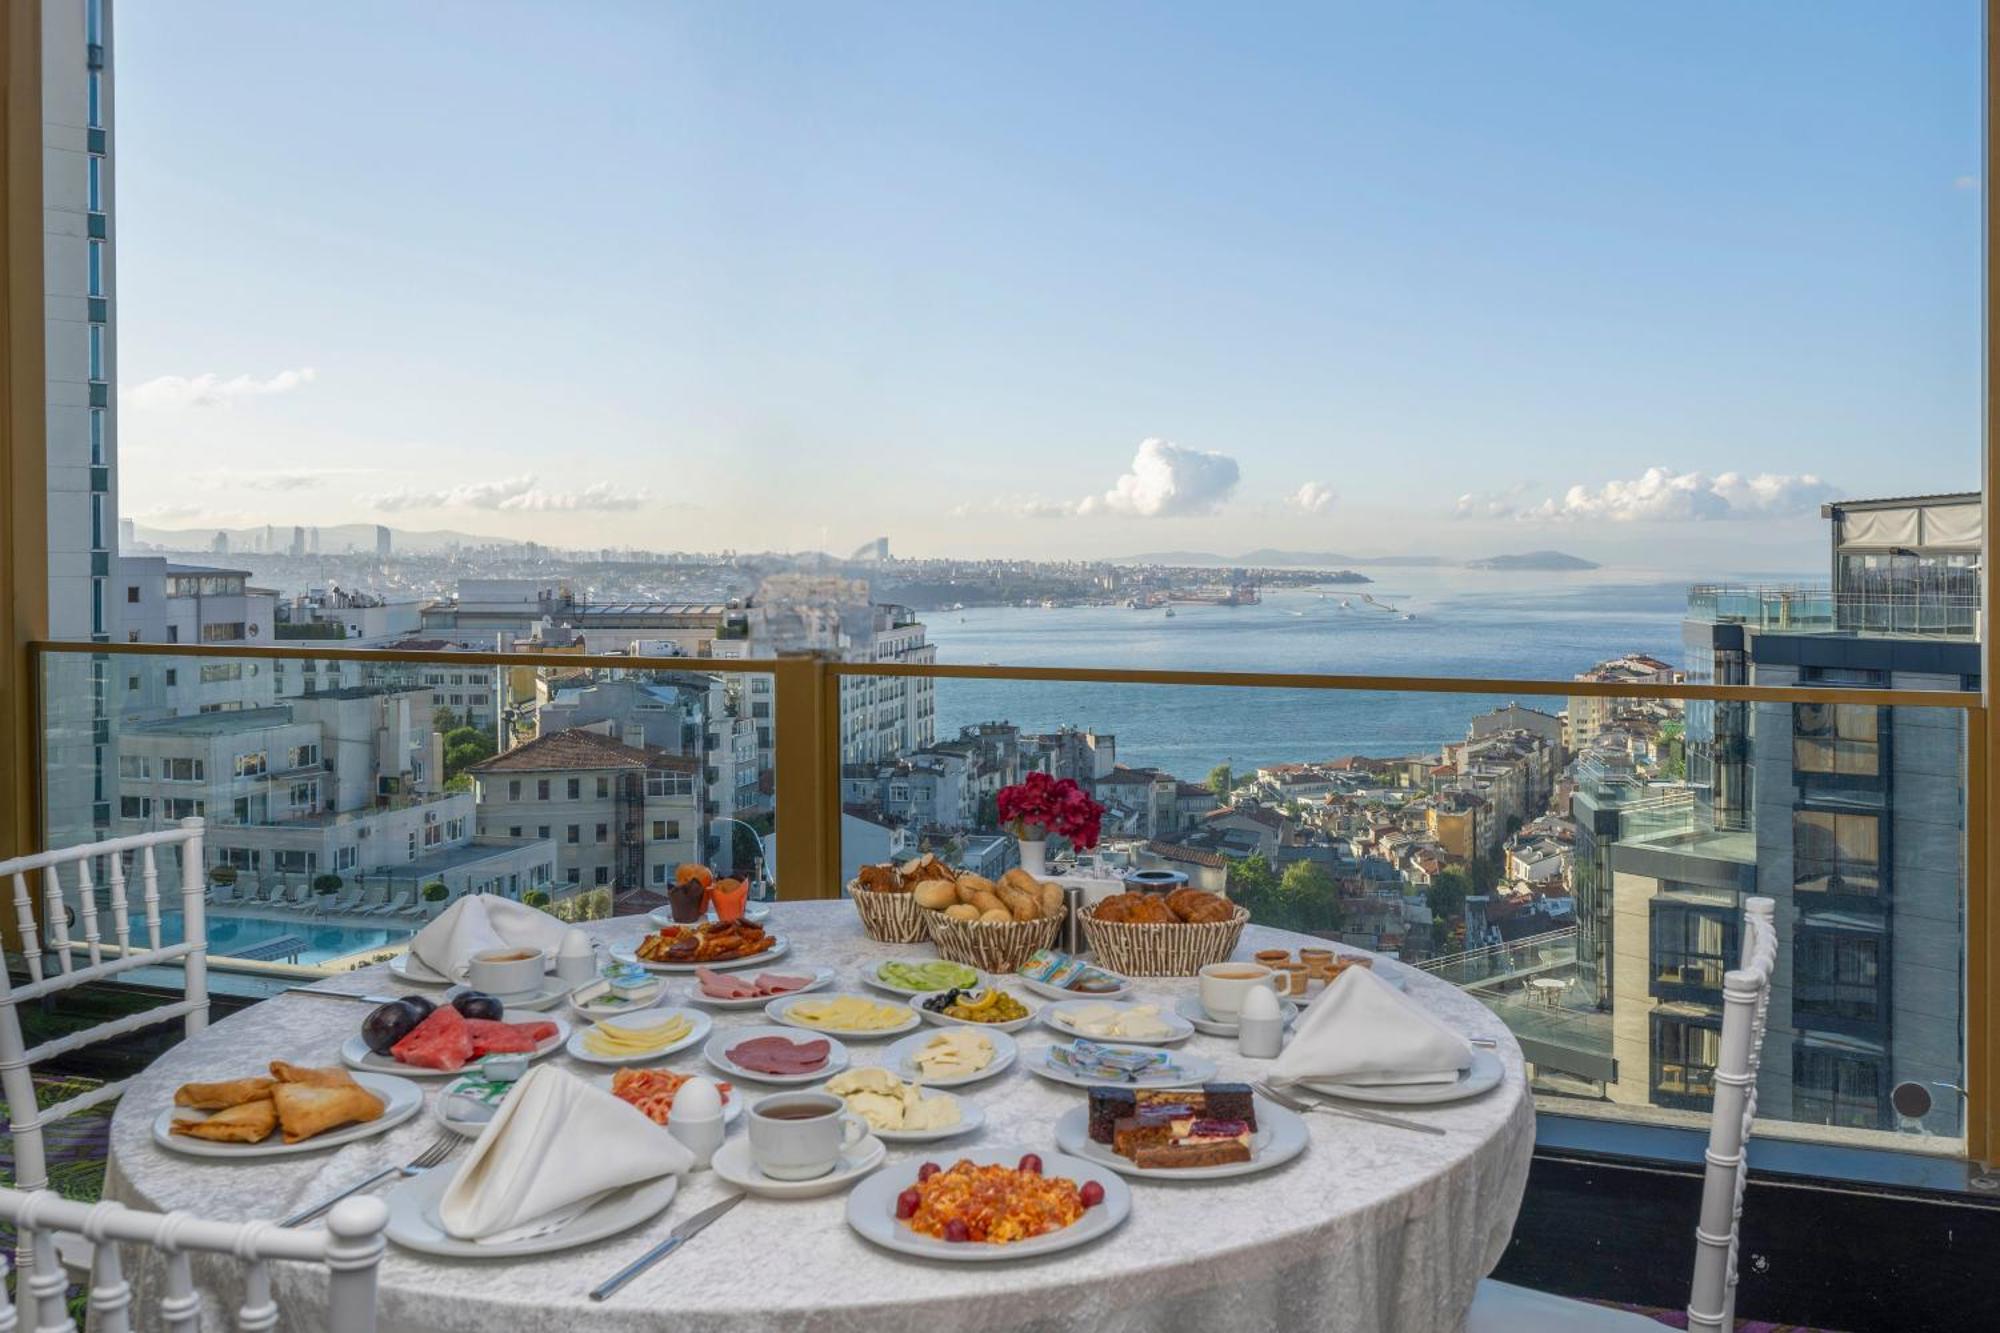 Taxim Hill Hotel Istanbul Luaran gambar